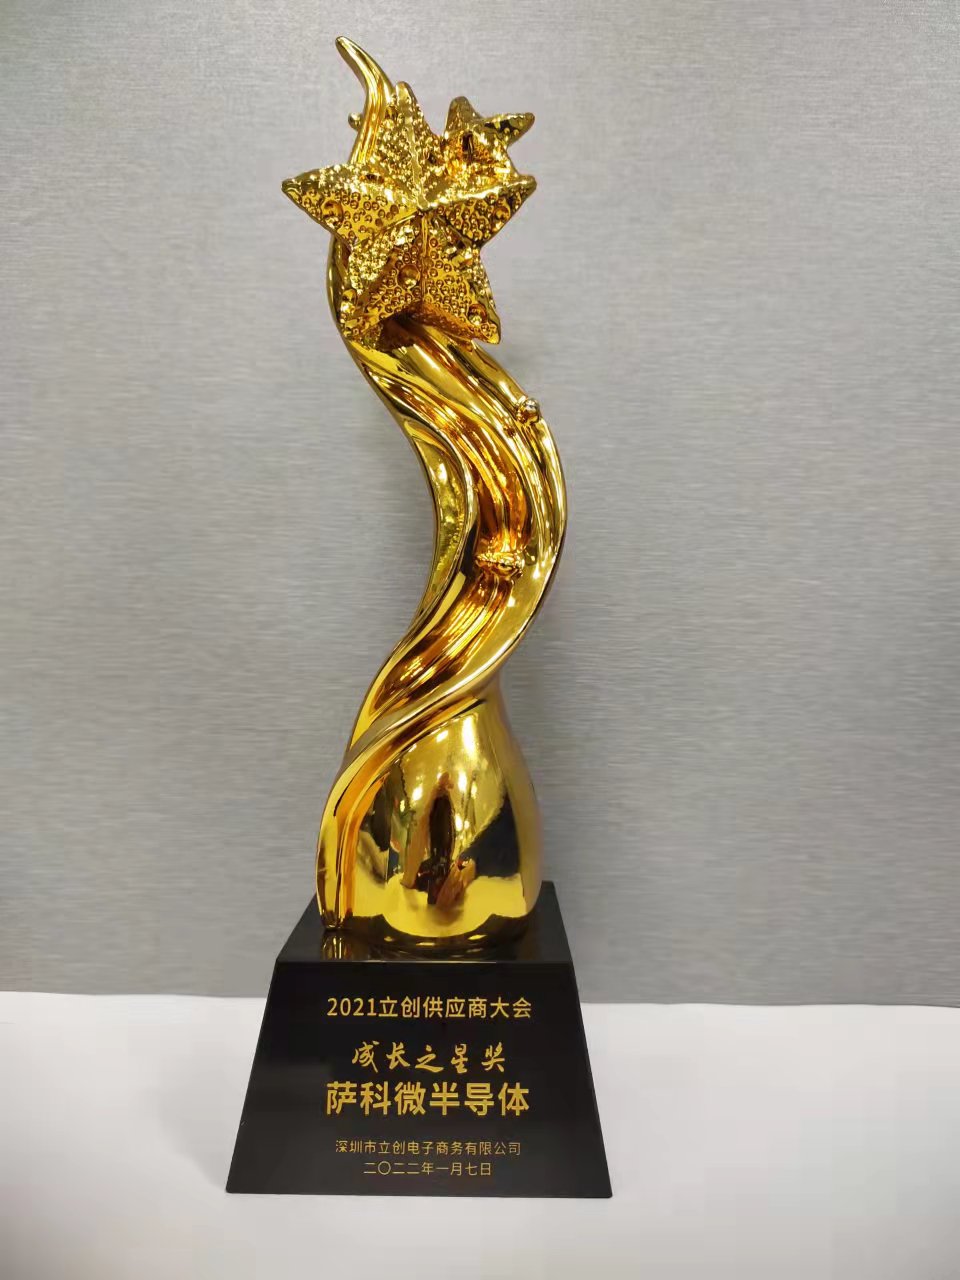 Der „Growing Star Award“ der Lieferantenkonferenz 2021 in Lichuang